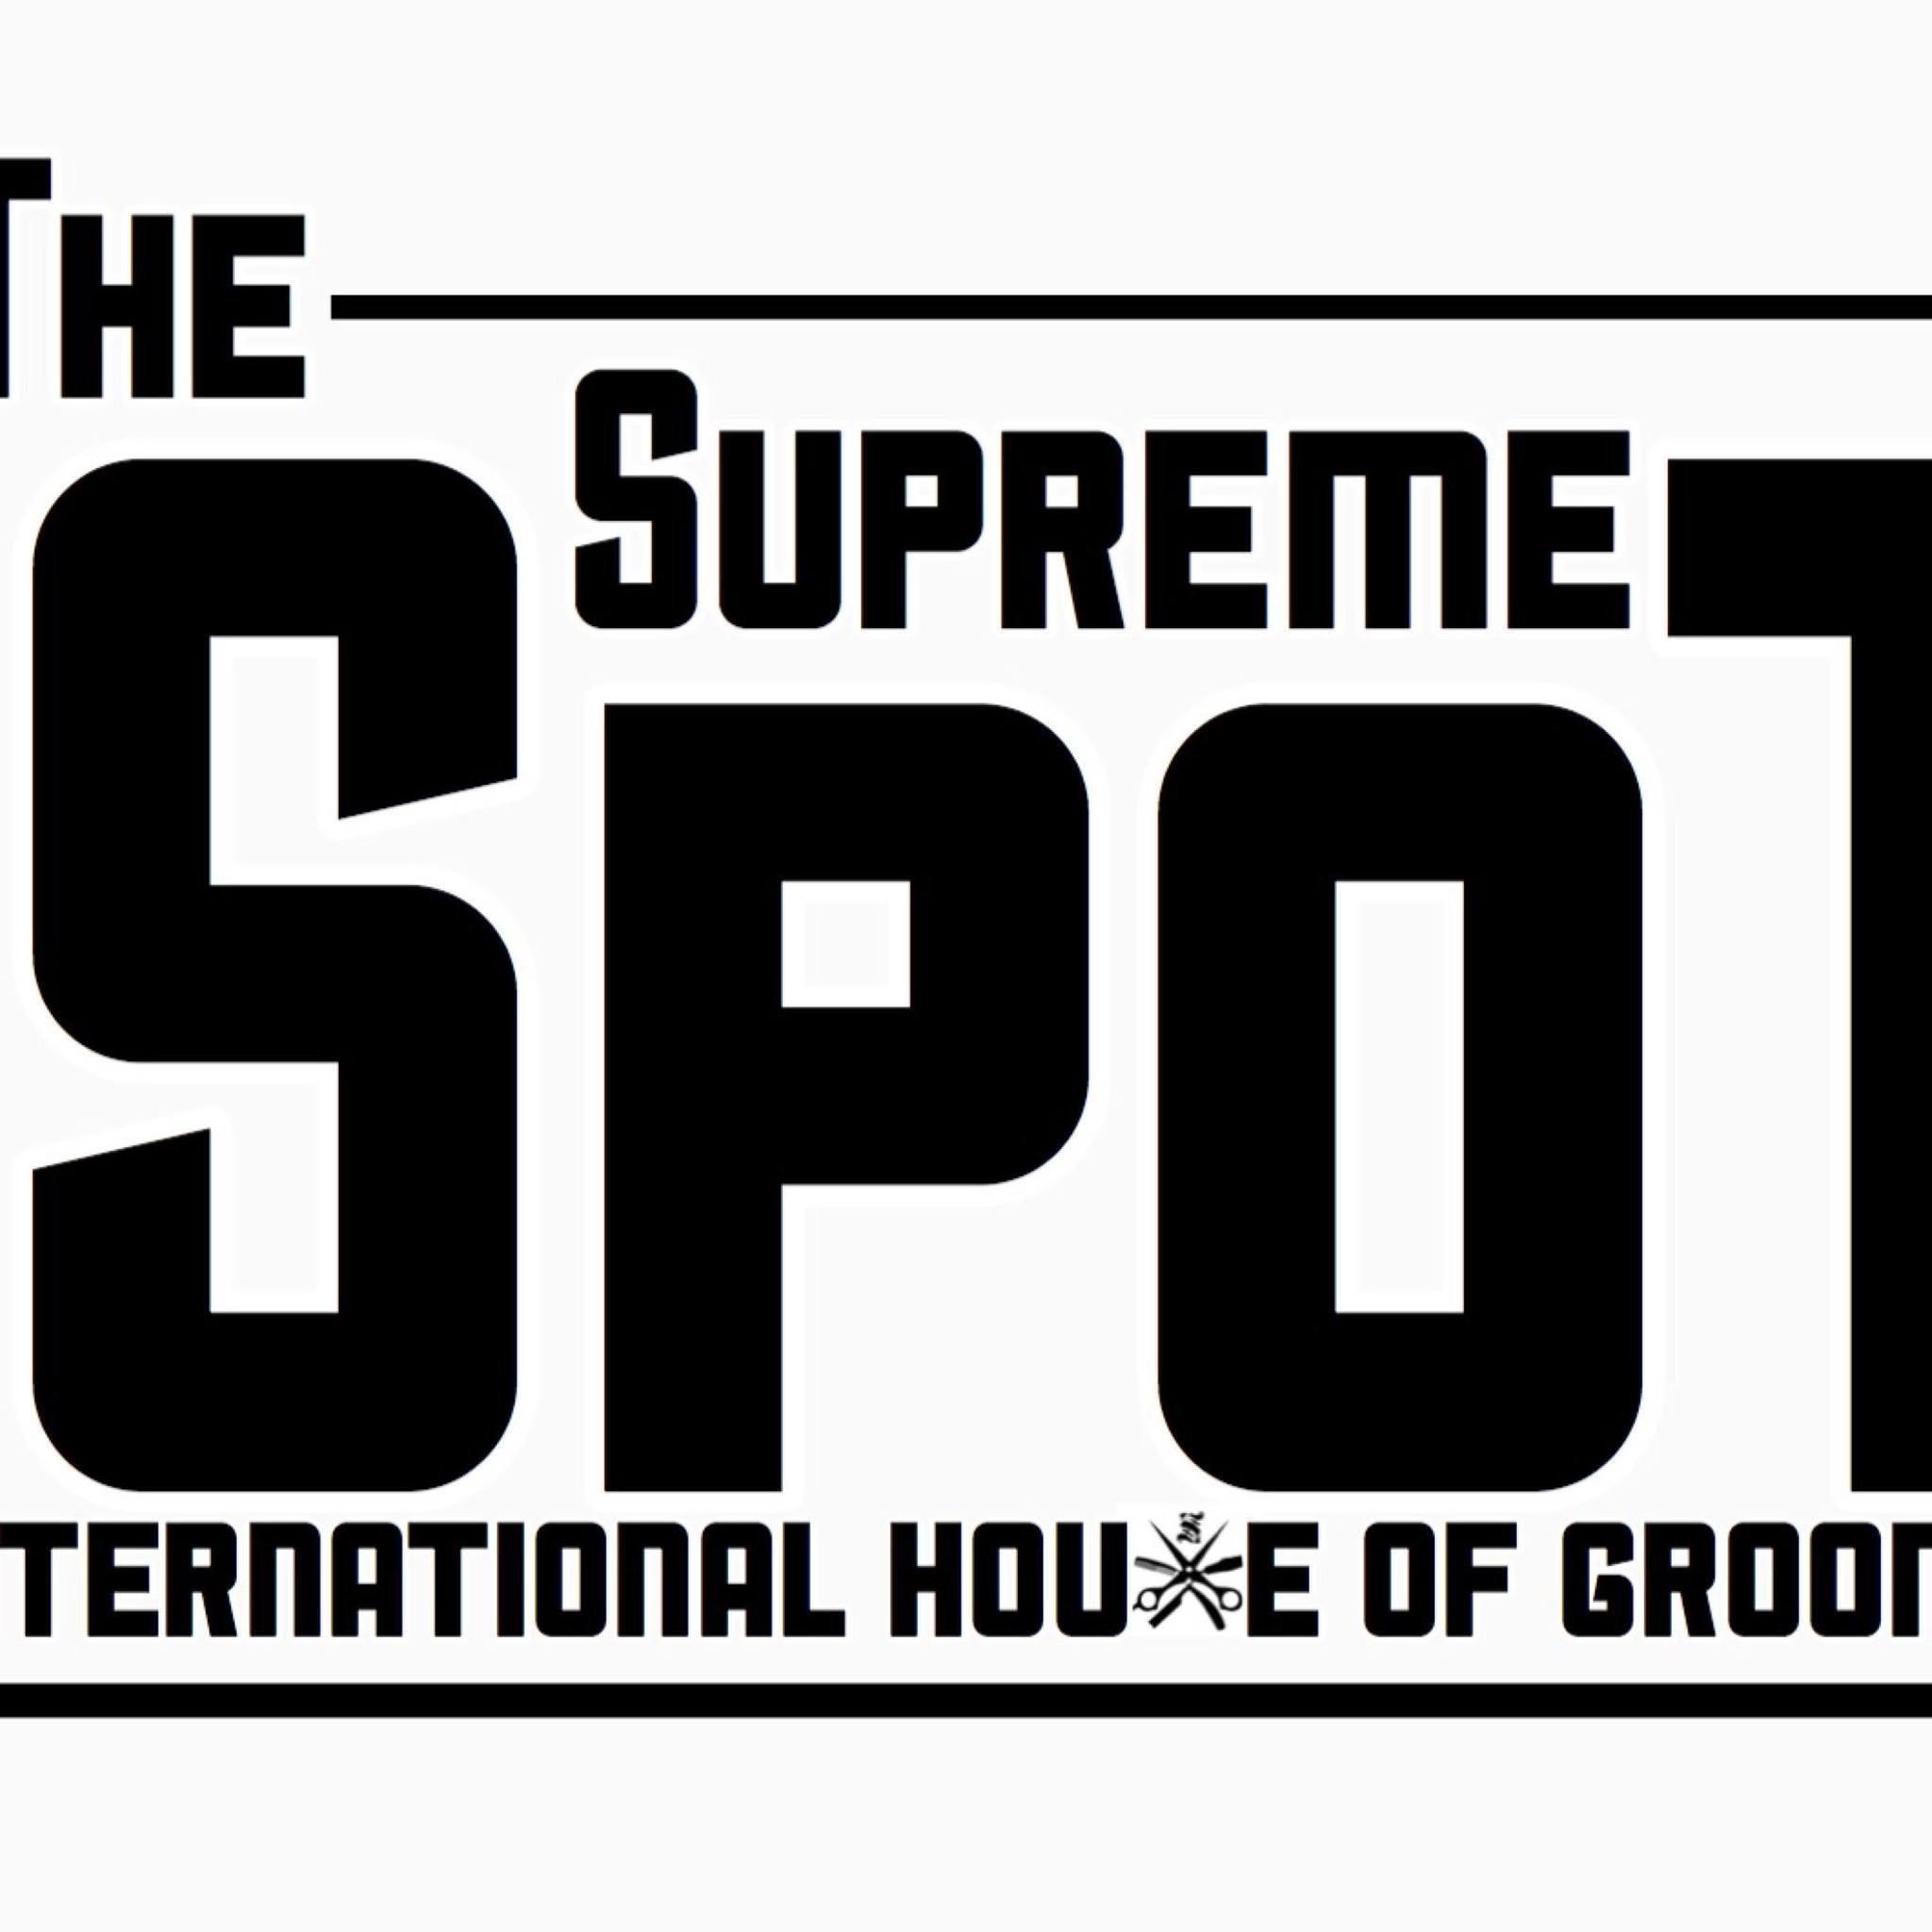 The Supreme Spot by Supreme - Huntsville, AL 35805 - (256)642-1375 | ShowMeLocal.com